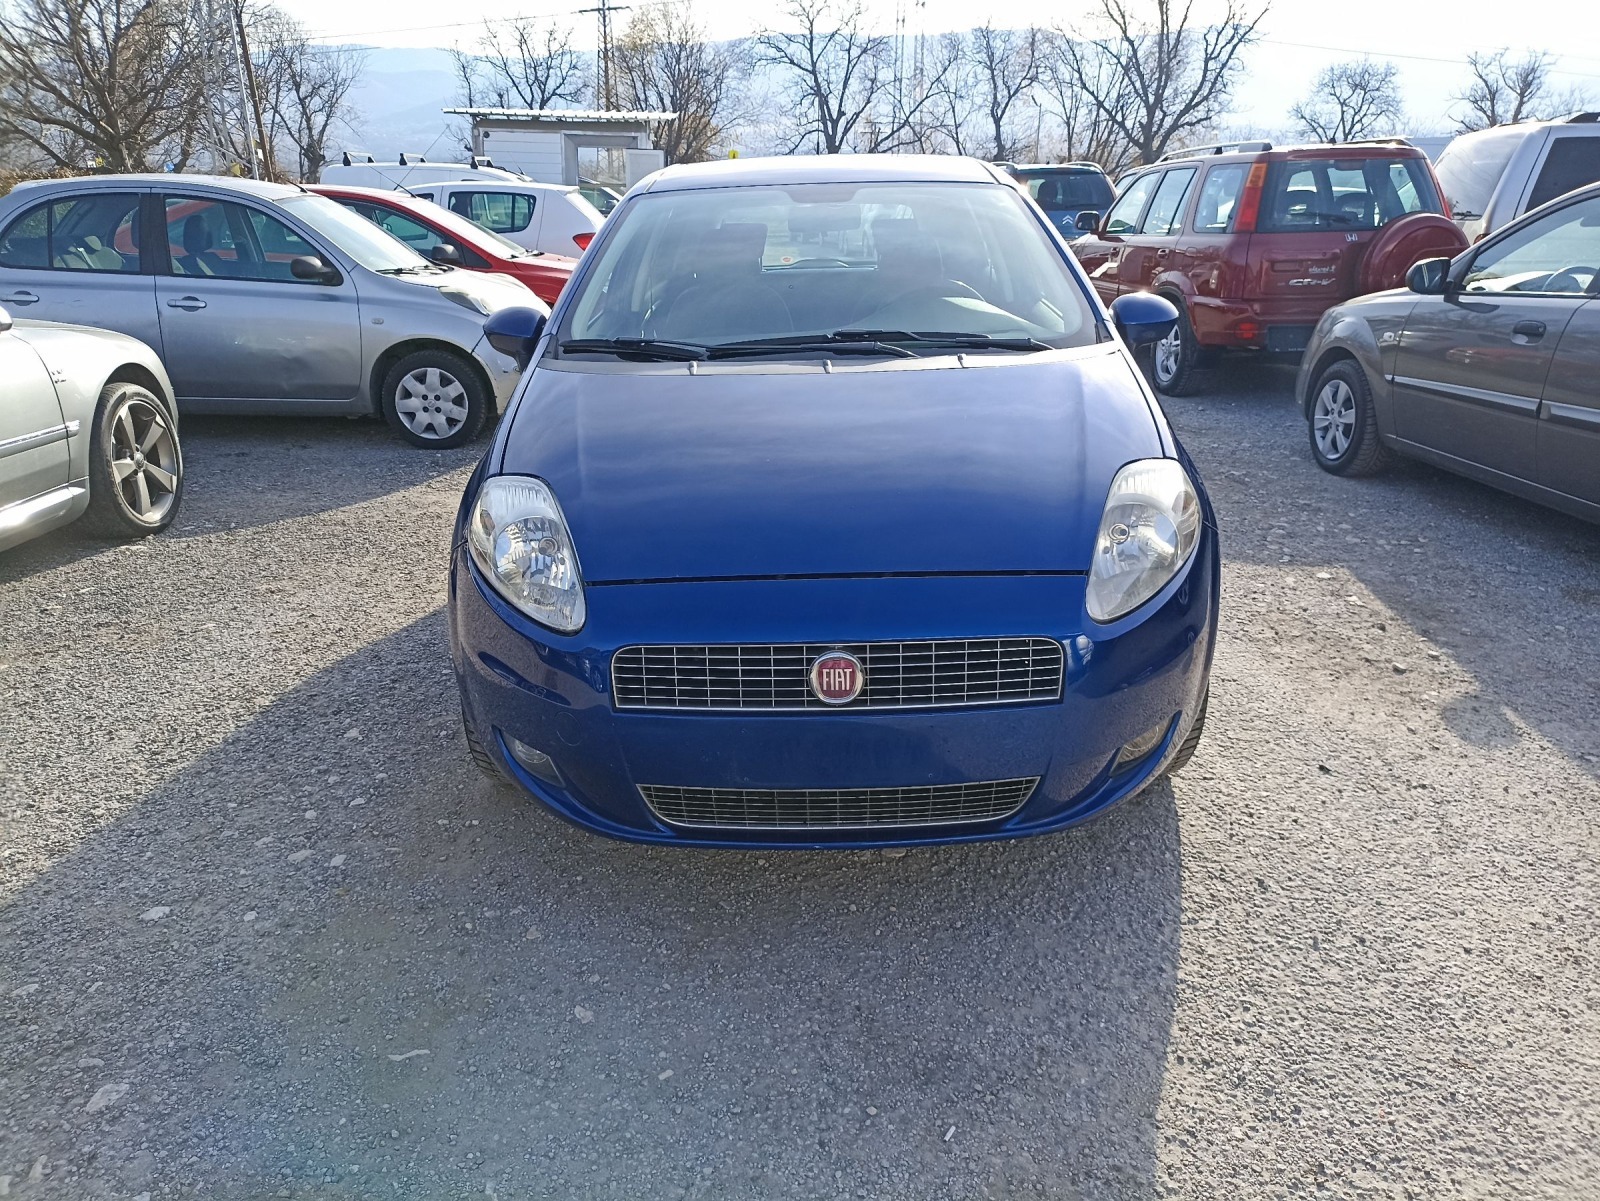 Fiat Punto 1,4 - изображение 1